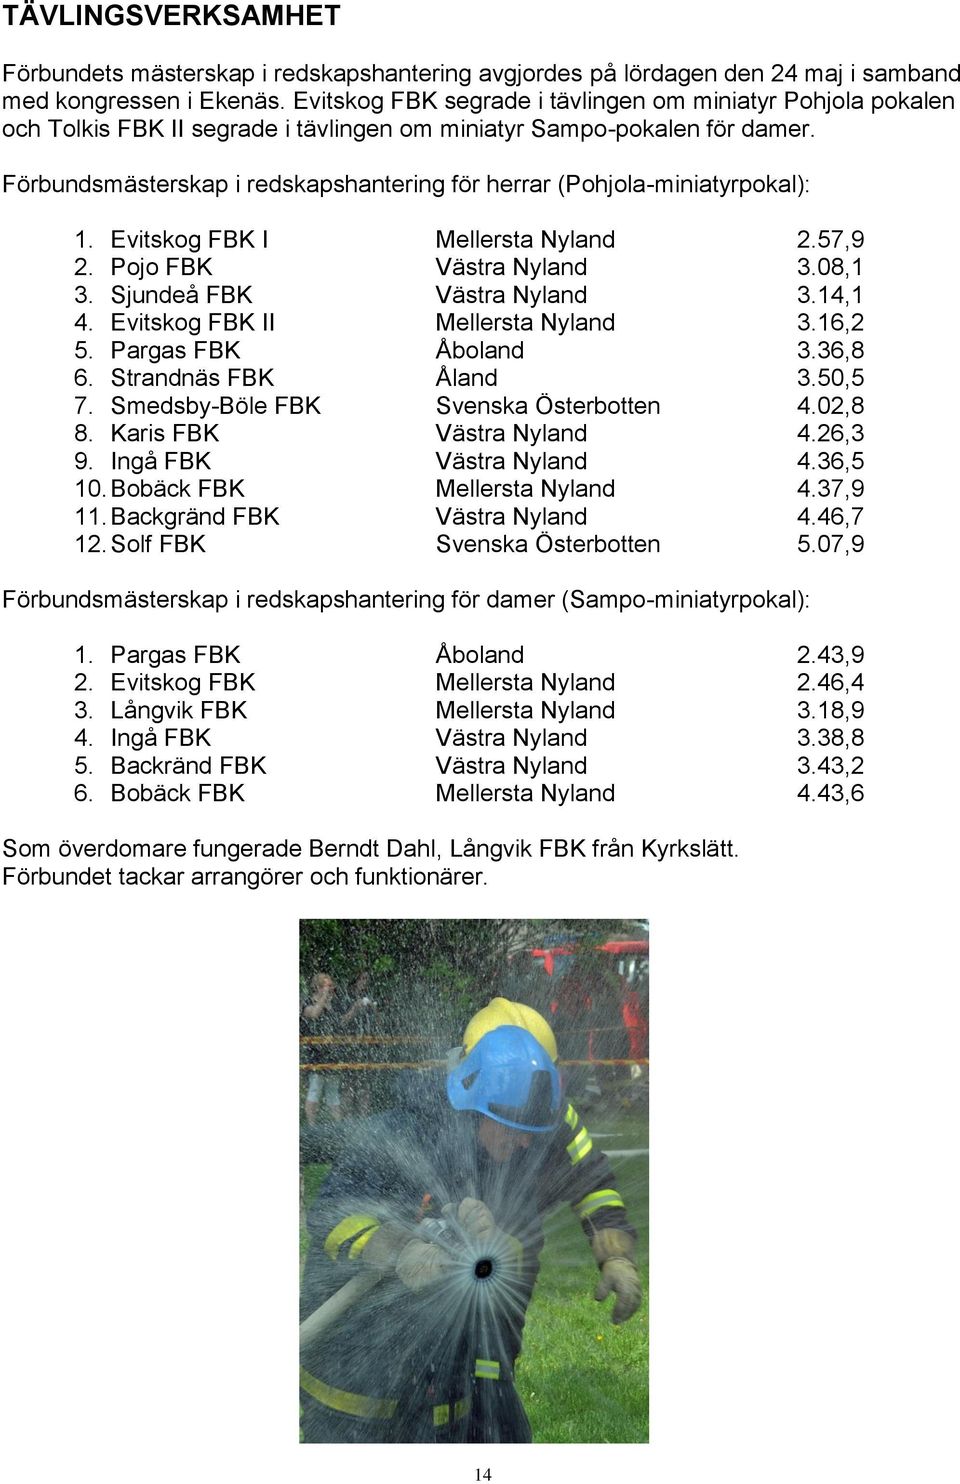 Förbundsmästerskap i redskapshantering för herrar (Pohjola-miniatyrpokal): 1. Evitskog FBK I Mellersta Nyland 2.57,9 2. Pojo FBK Västra Nyland 3.08,1 3. Sjundeå FBK Västra Nyland 3.14,1 4.